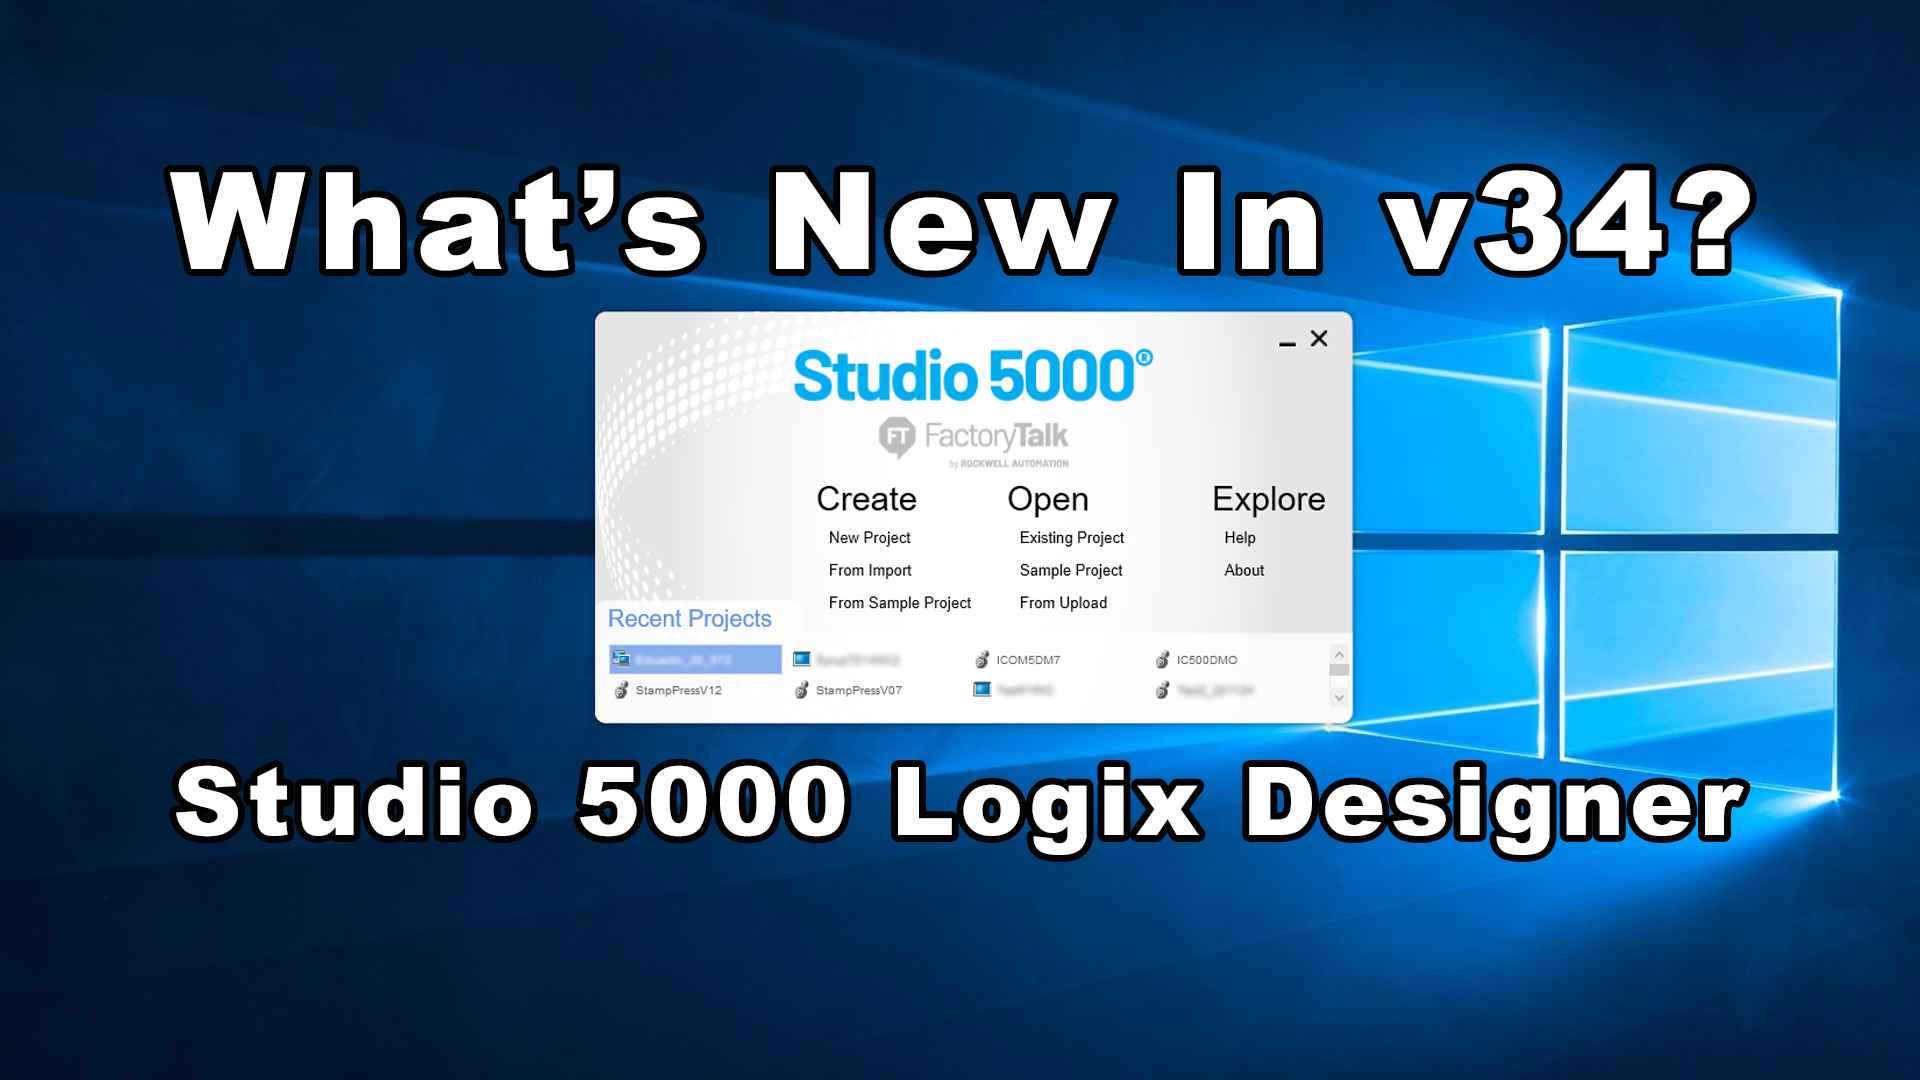 Studio 5000 - v34: What's New